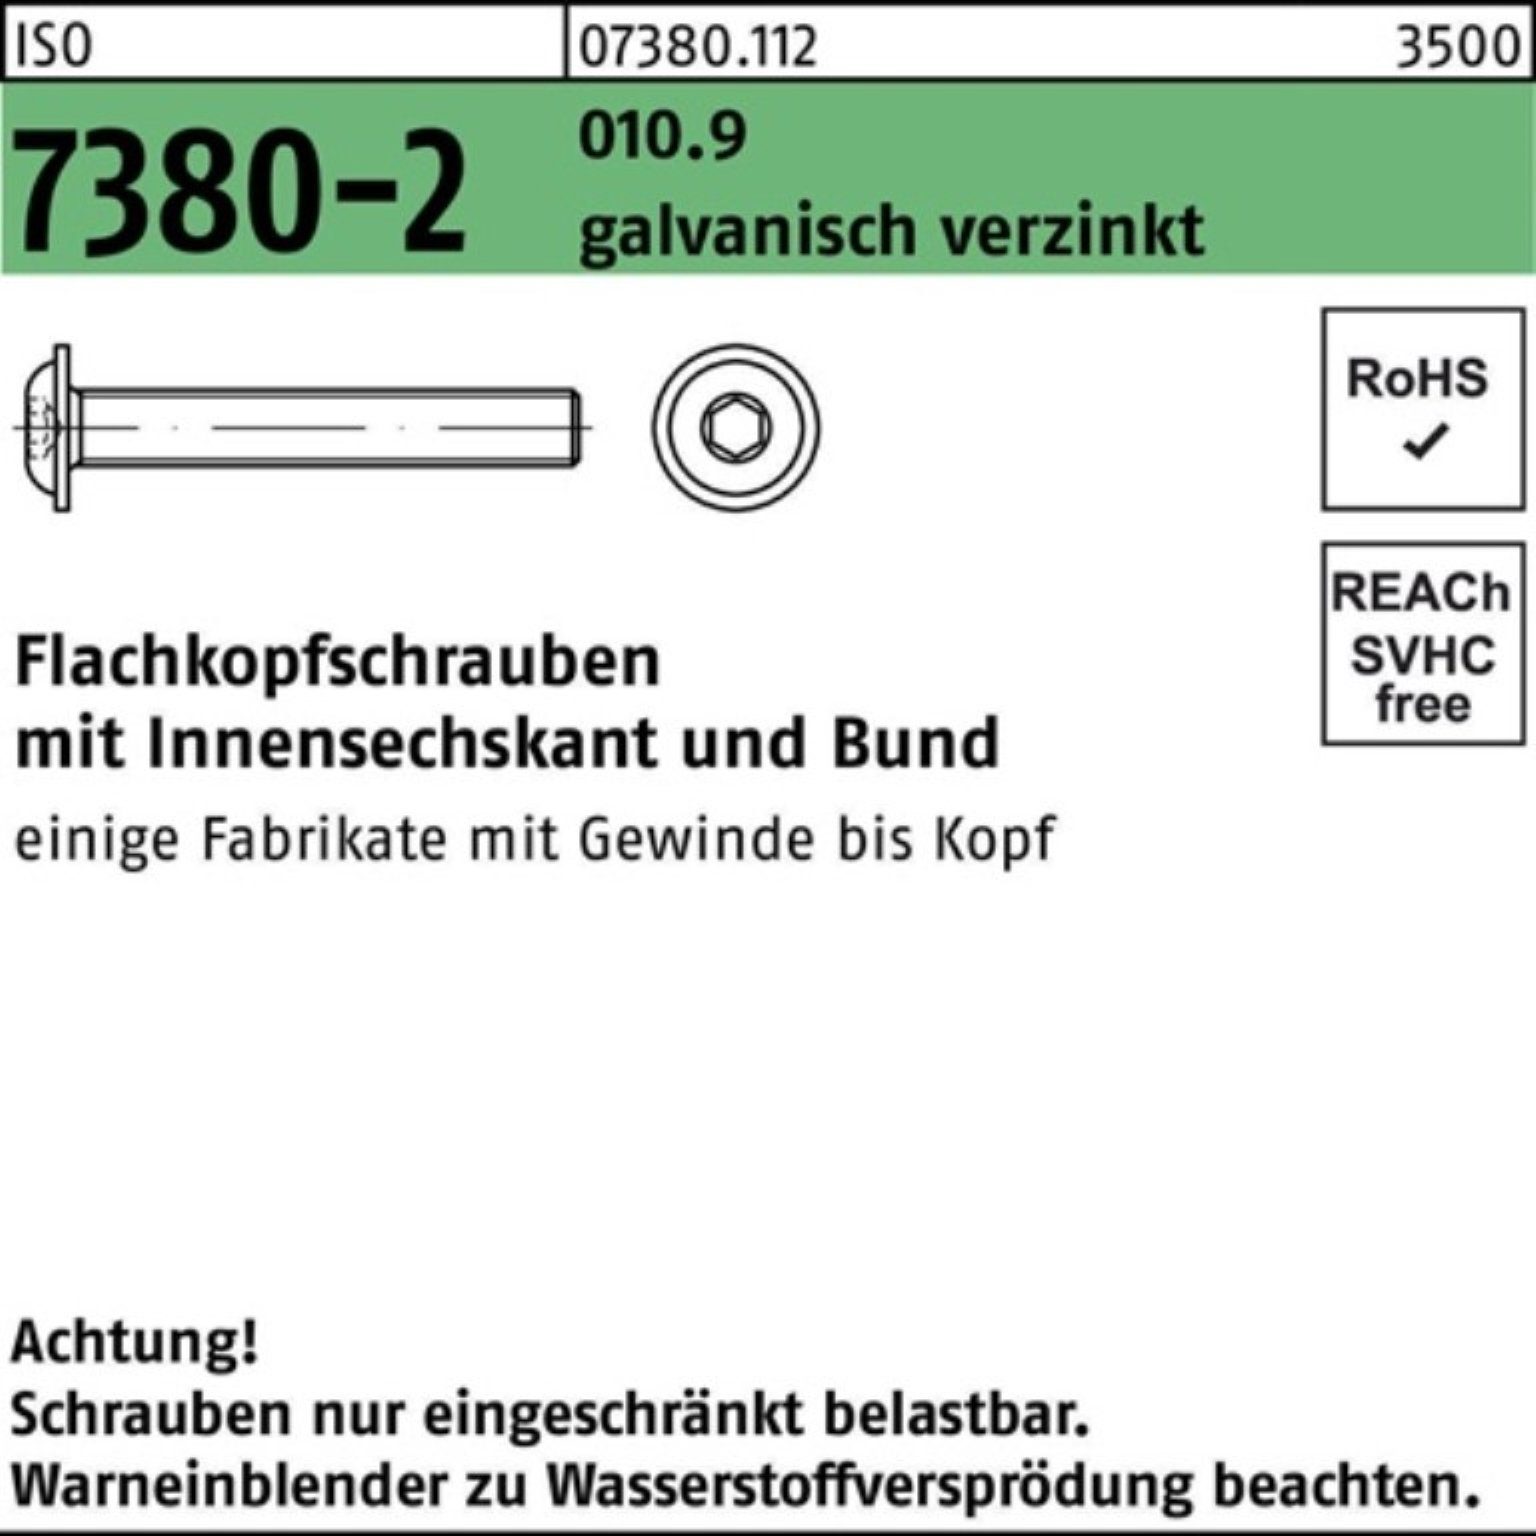 Reyher Schraube 500er Bund/Innen-6kt 7380-2 ISO Pack 010.9 gal M4x30 Flachkopfschraube